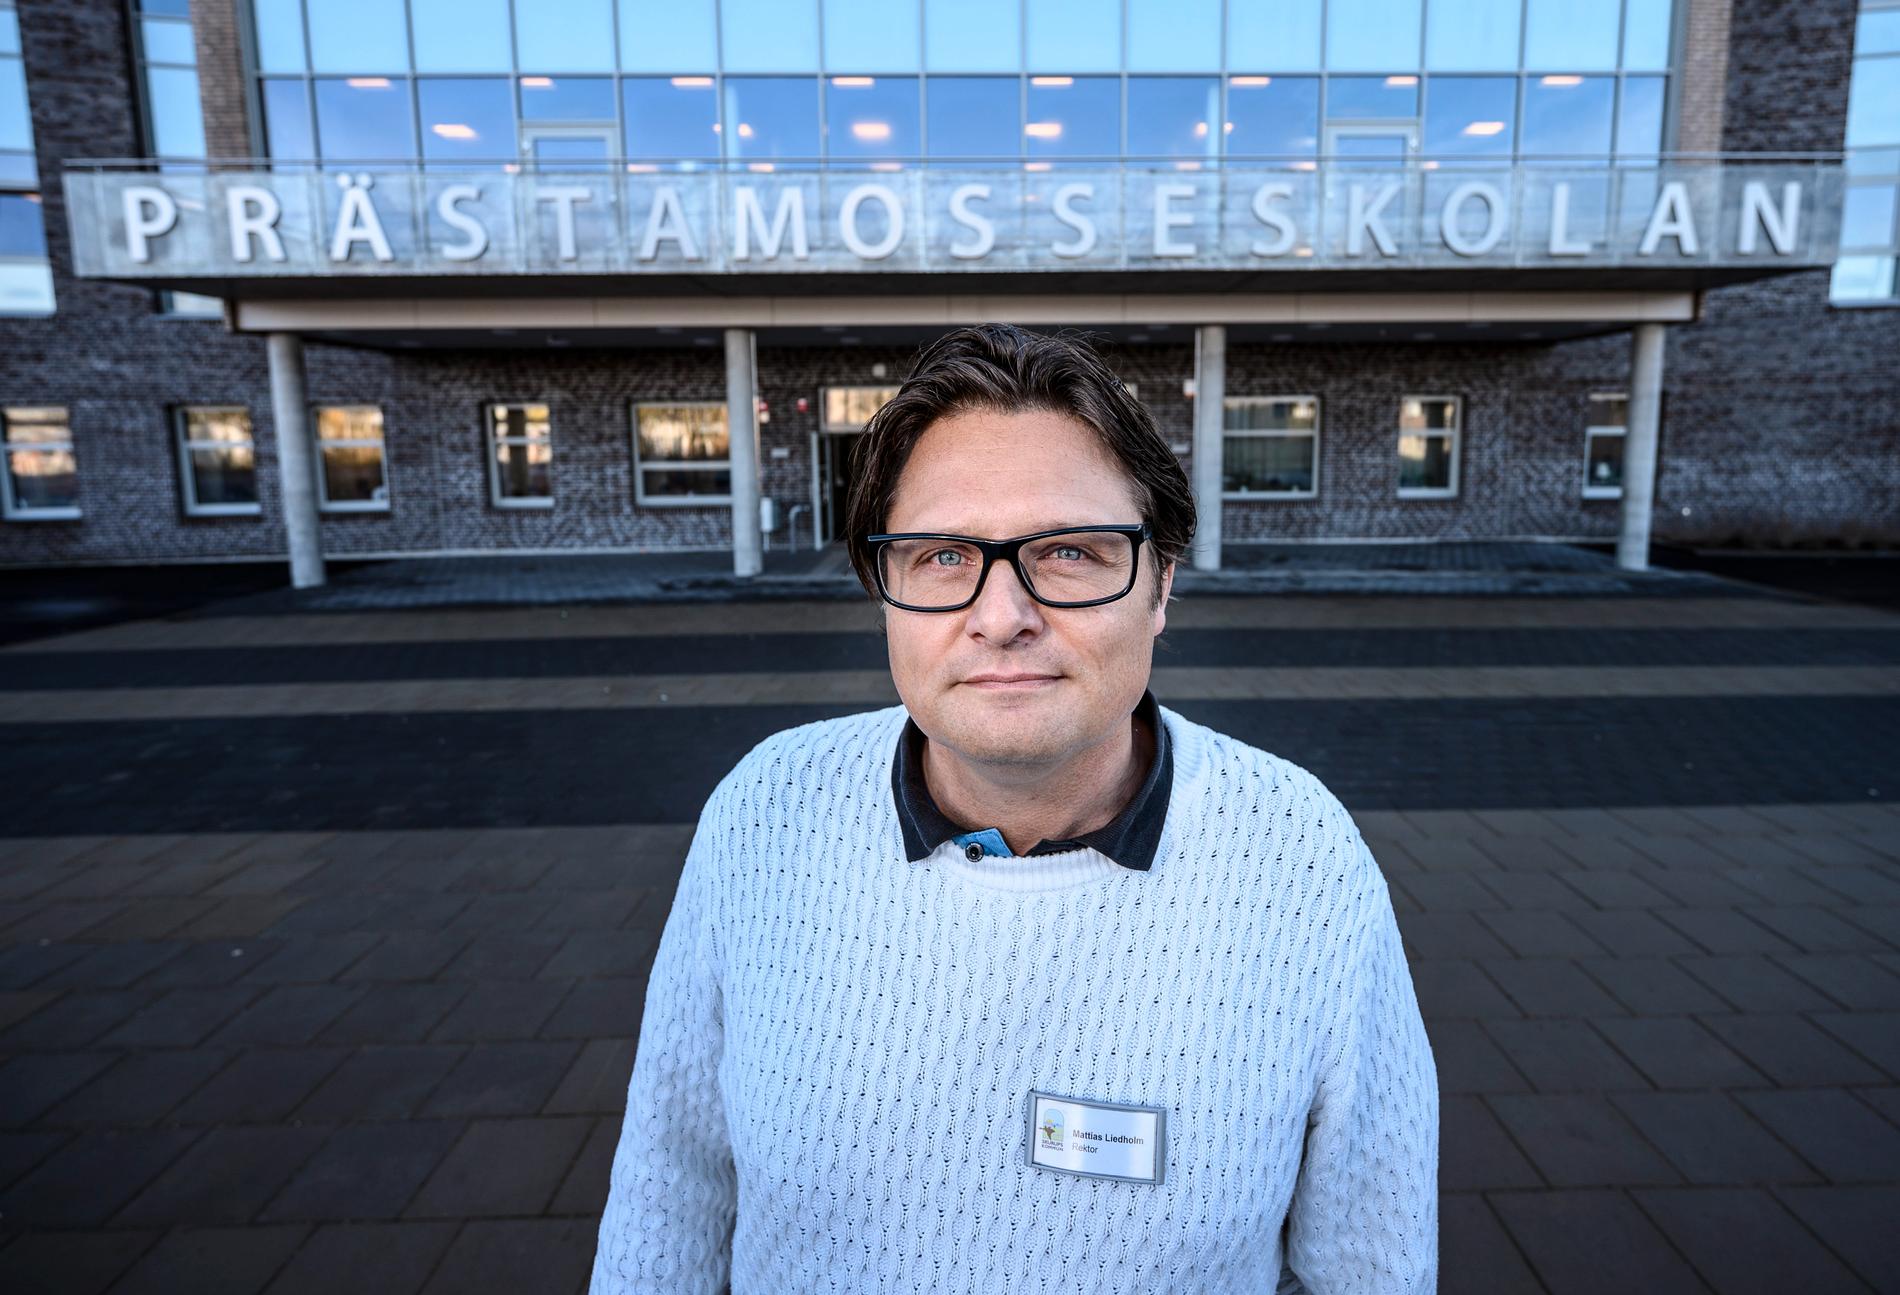 Mattias Liedholm, rektor på Prästamosseskolan i Skurup, blev på skärtorsdagen avstängd från sin tjänst. Han har tidigare vägrat införa det kommunalt beslutade slöjförbudet på sin skola, med hänvisning till vår grundlagsskyddade religionsfrihet. 